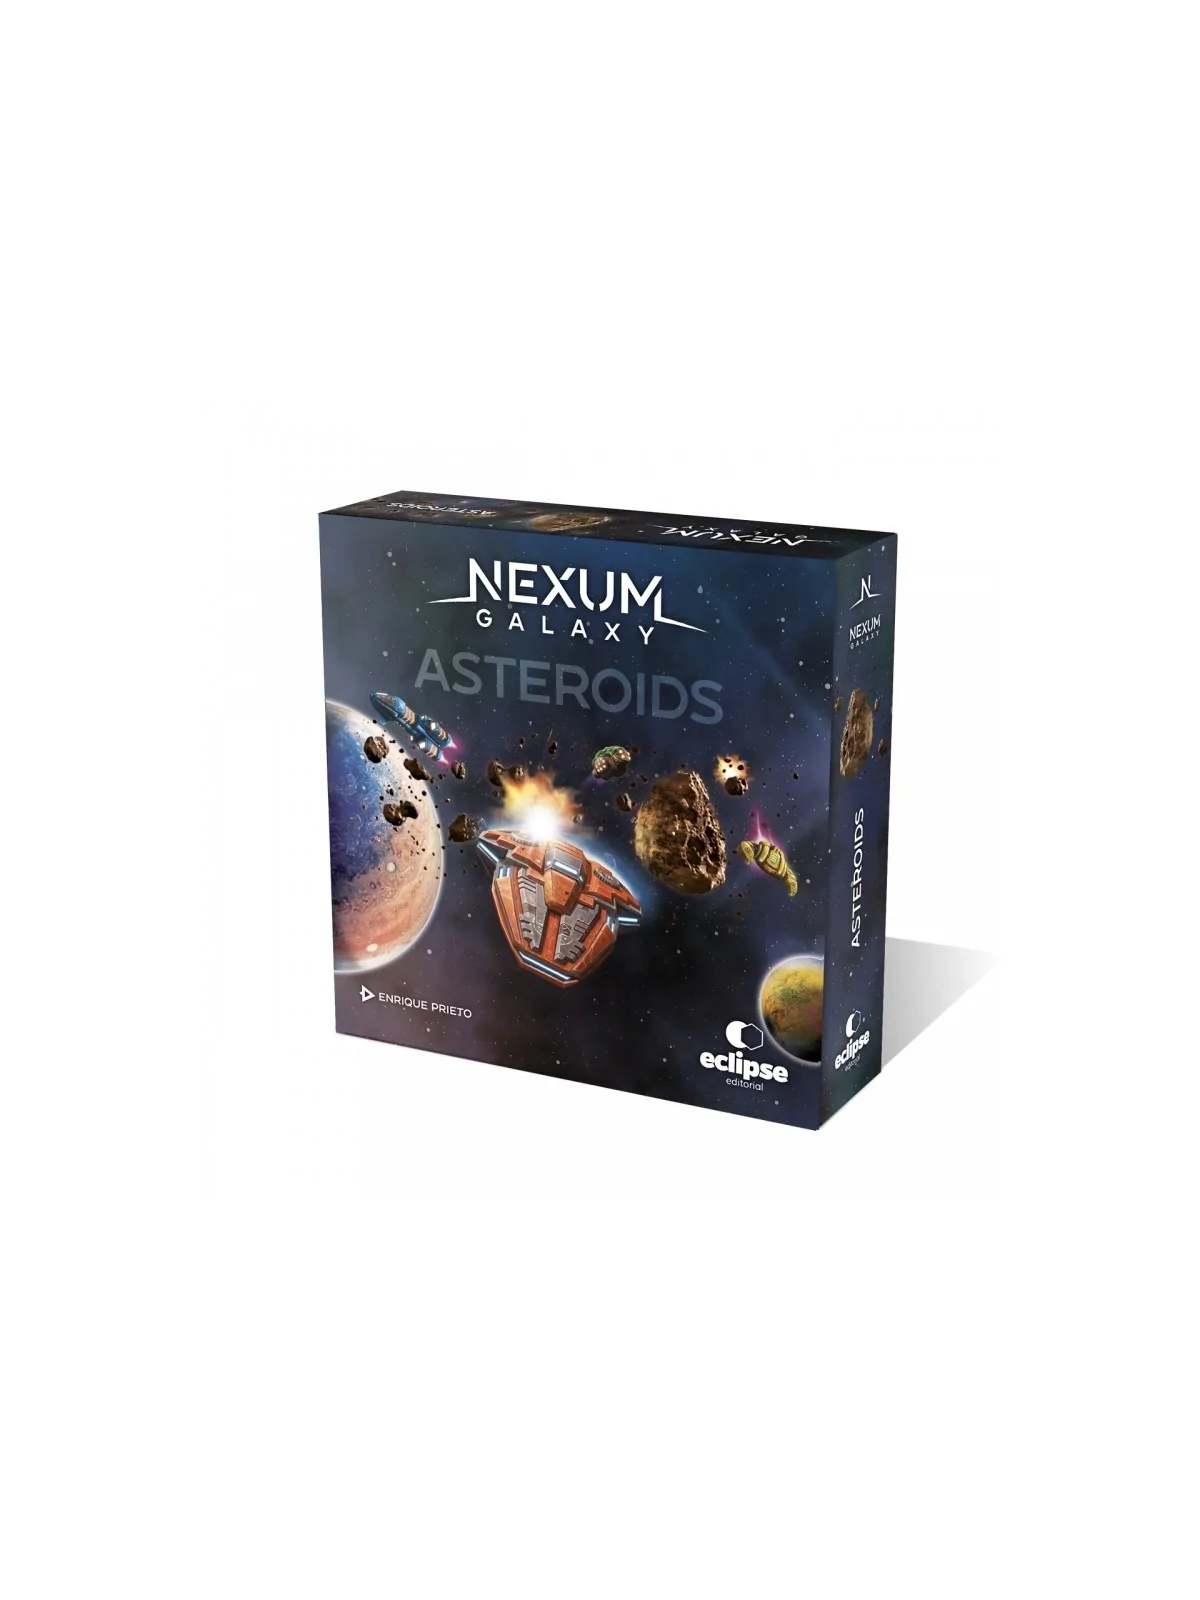 Comprar Nexum Galaxy: Expansión Asteroids barato al mejor precio 22,50